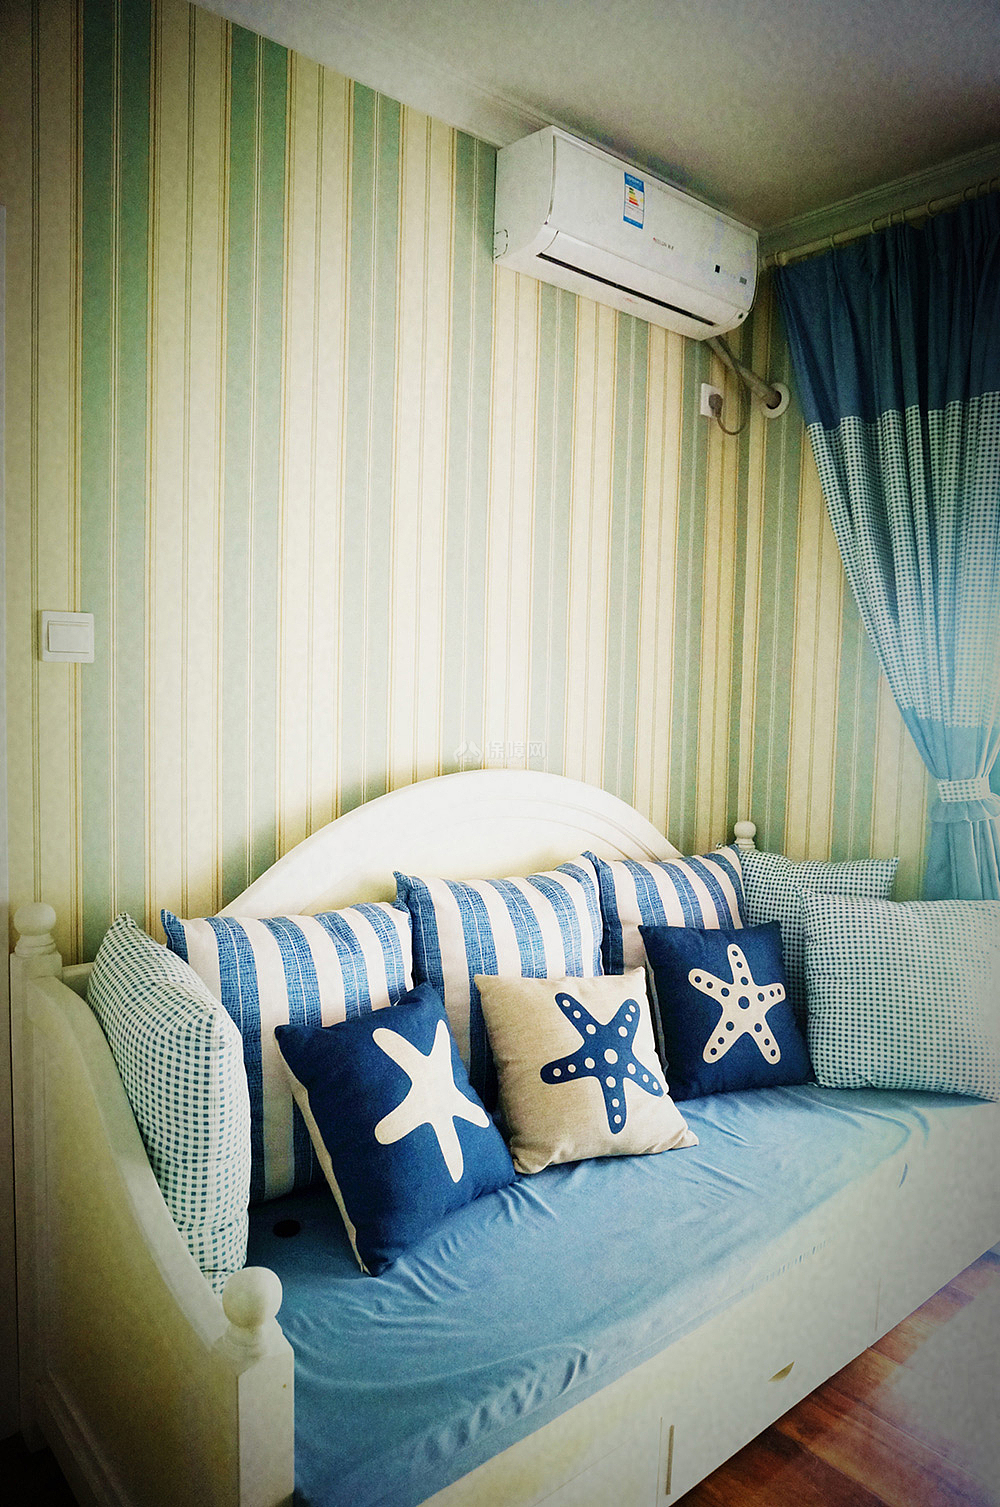 地中海风格三口之家之客厅沙发床布置效果图